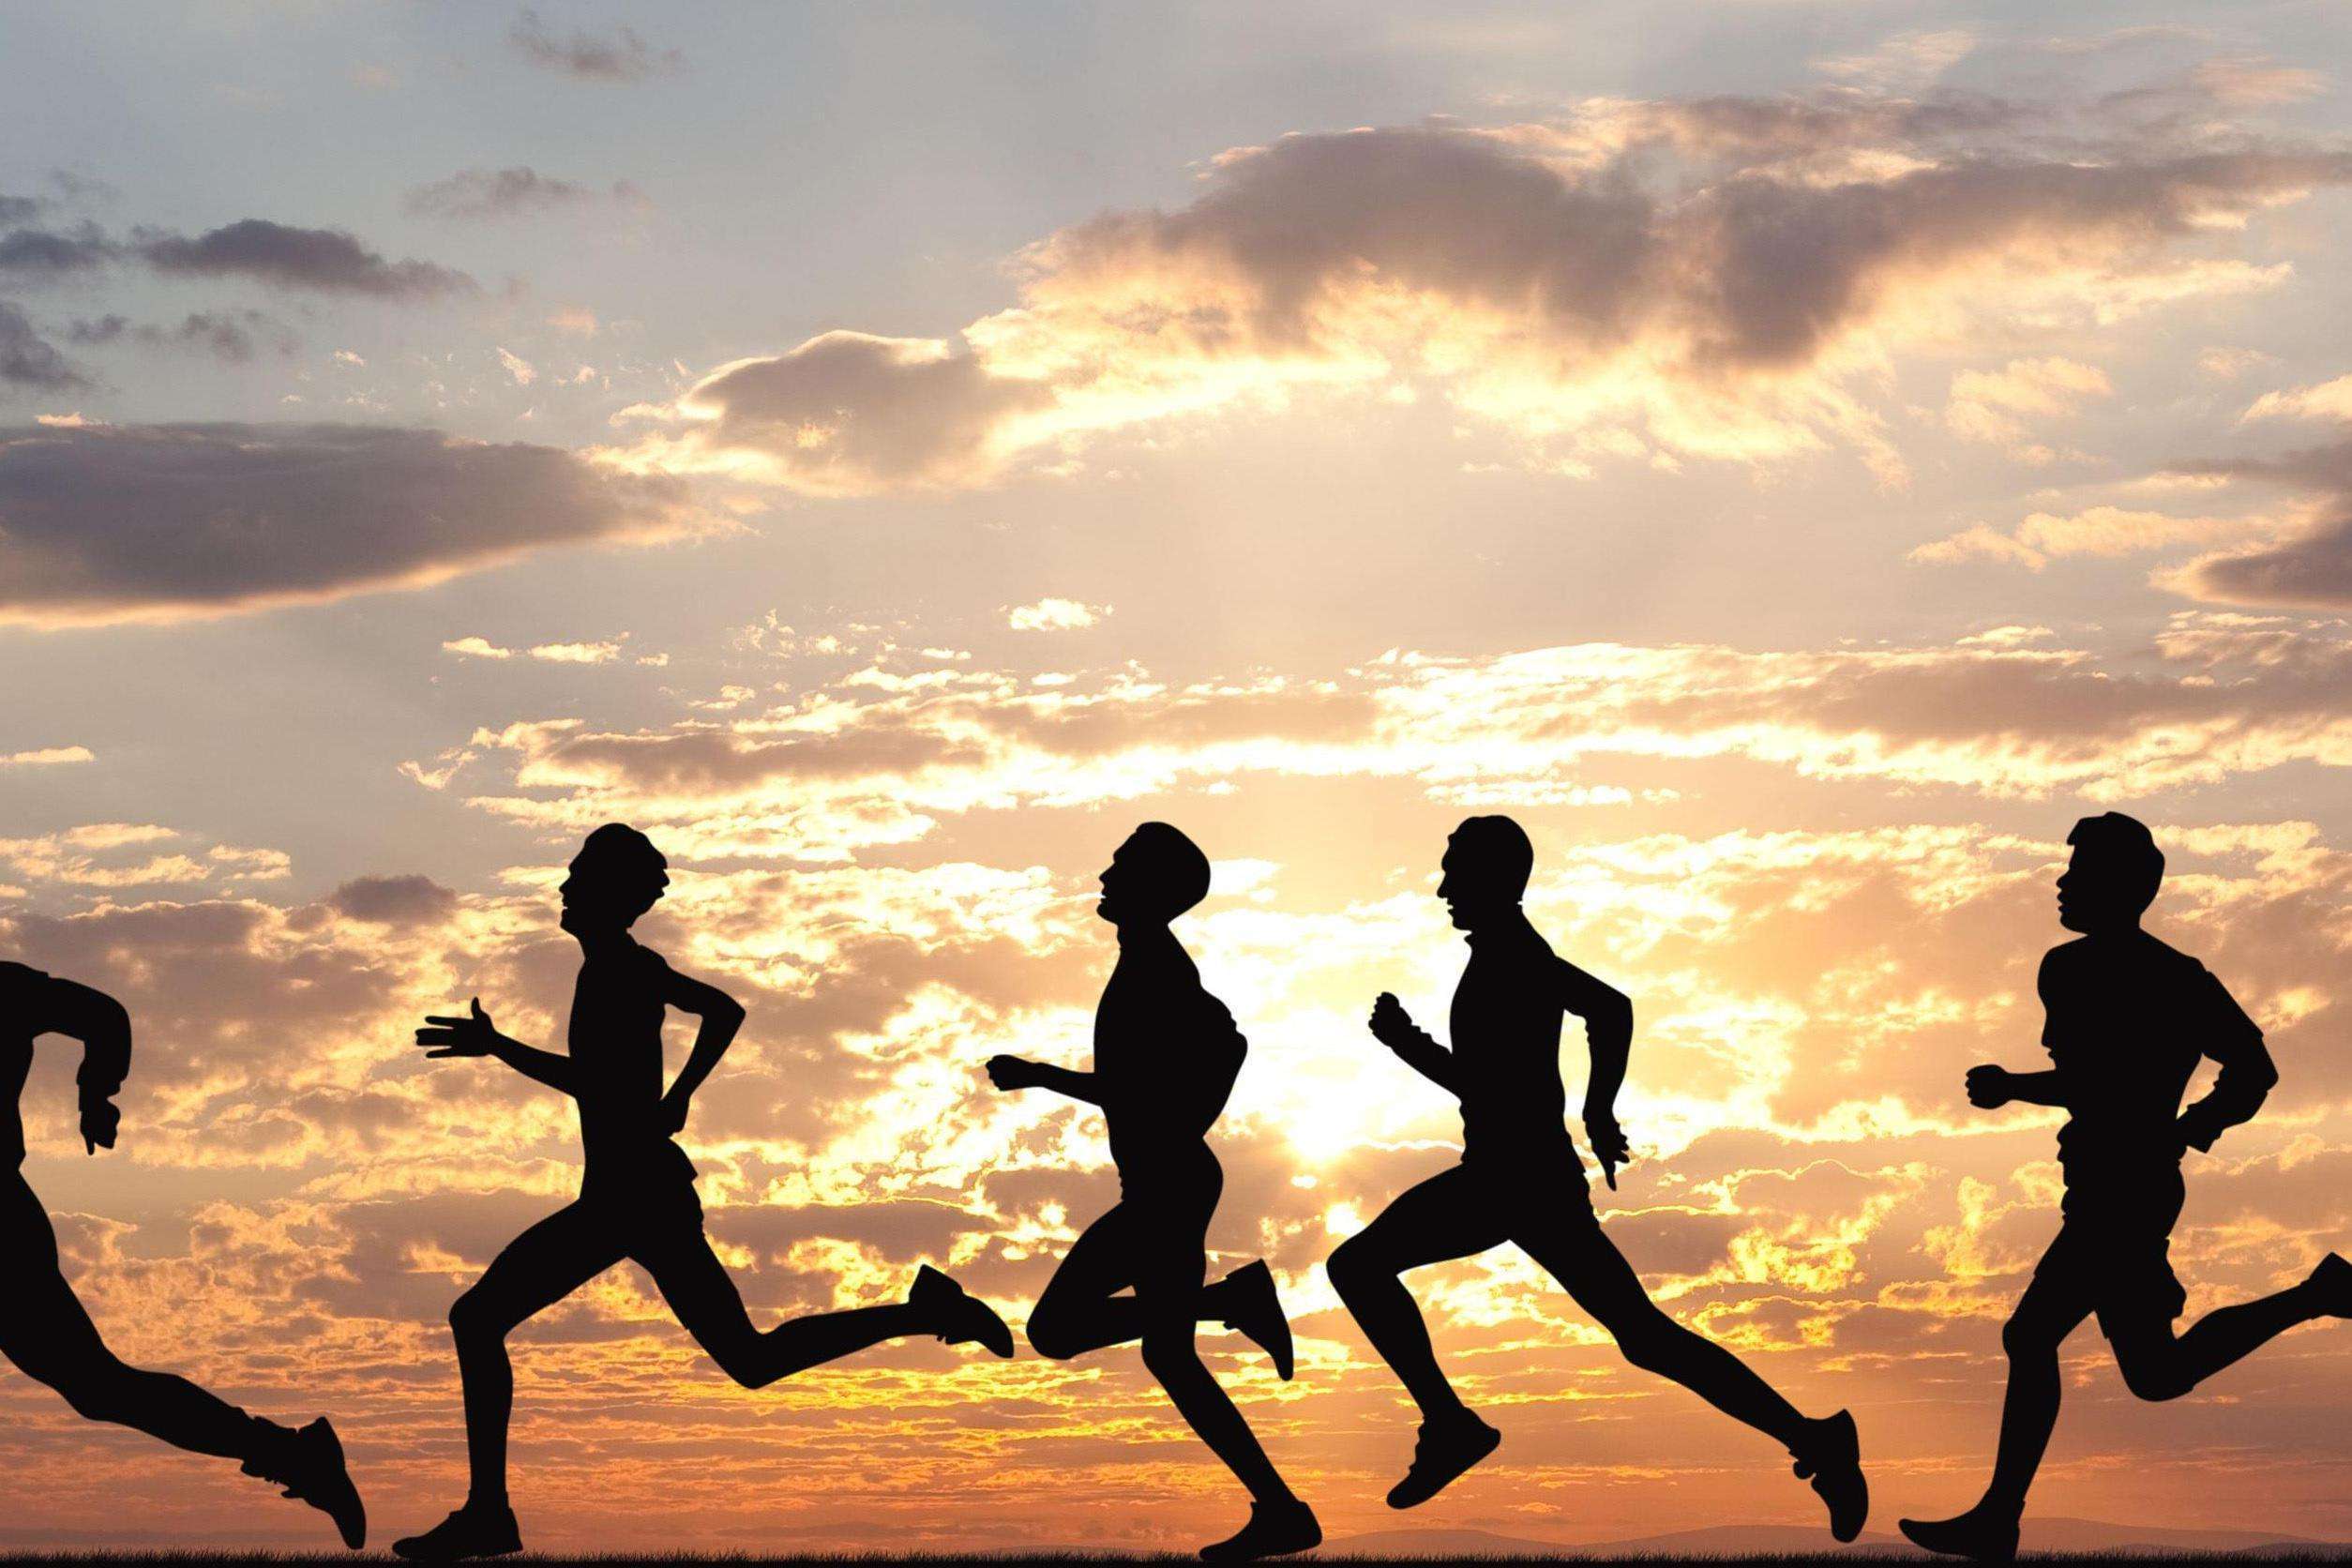 原创跑步有益健康,但别让跑步毁了你的膝盖,做好3点,有效保护关节